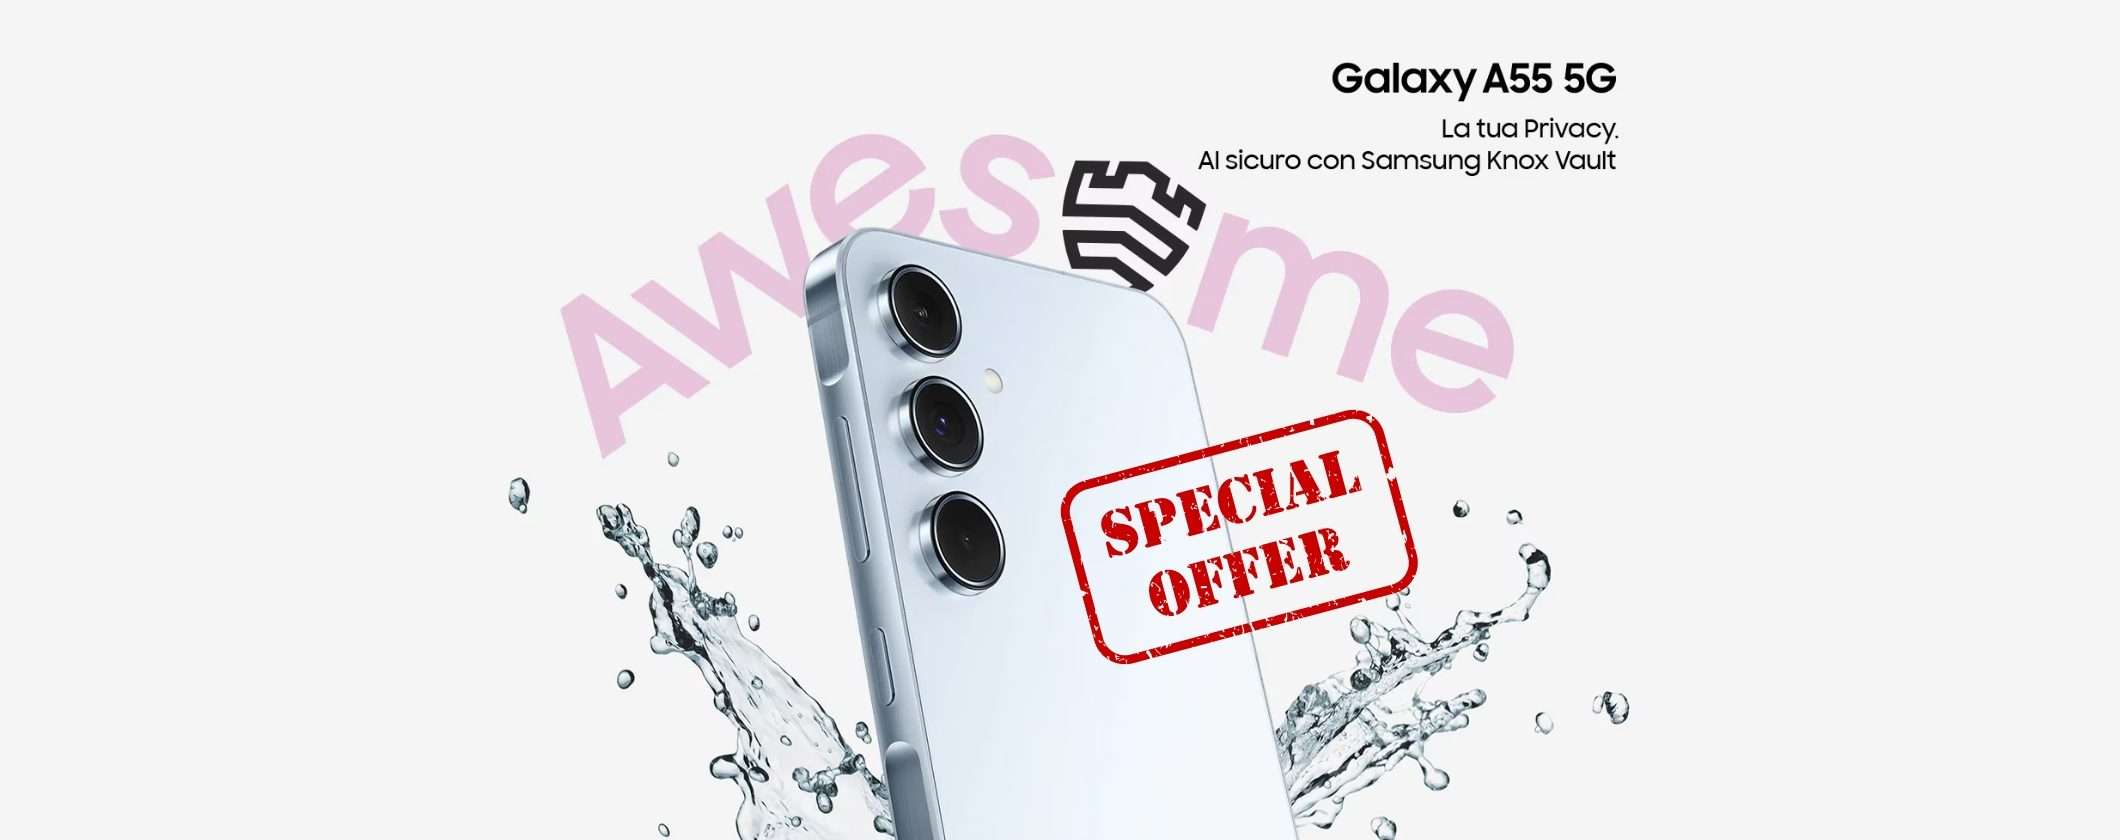 Samsung Galaxy A55 256GB: novità incredibile con 170€ di SCONTO su eBay